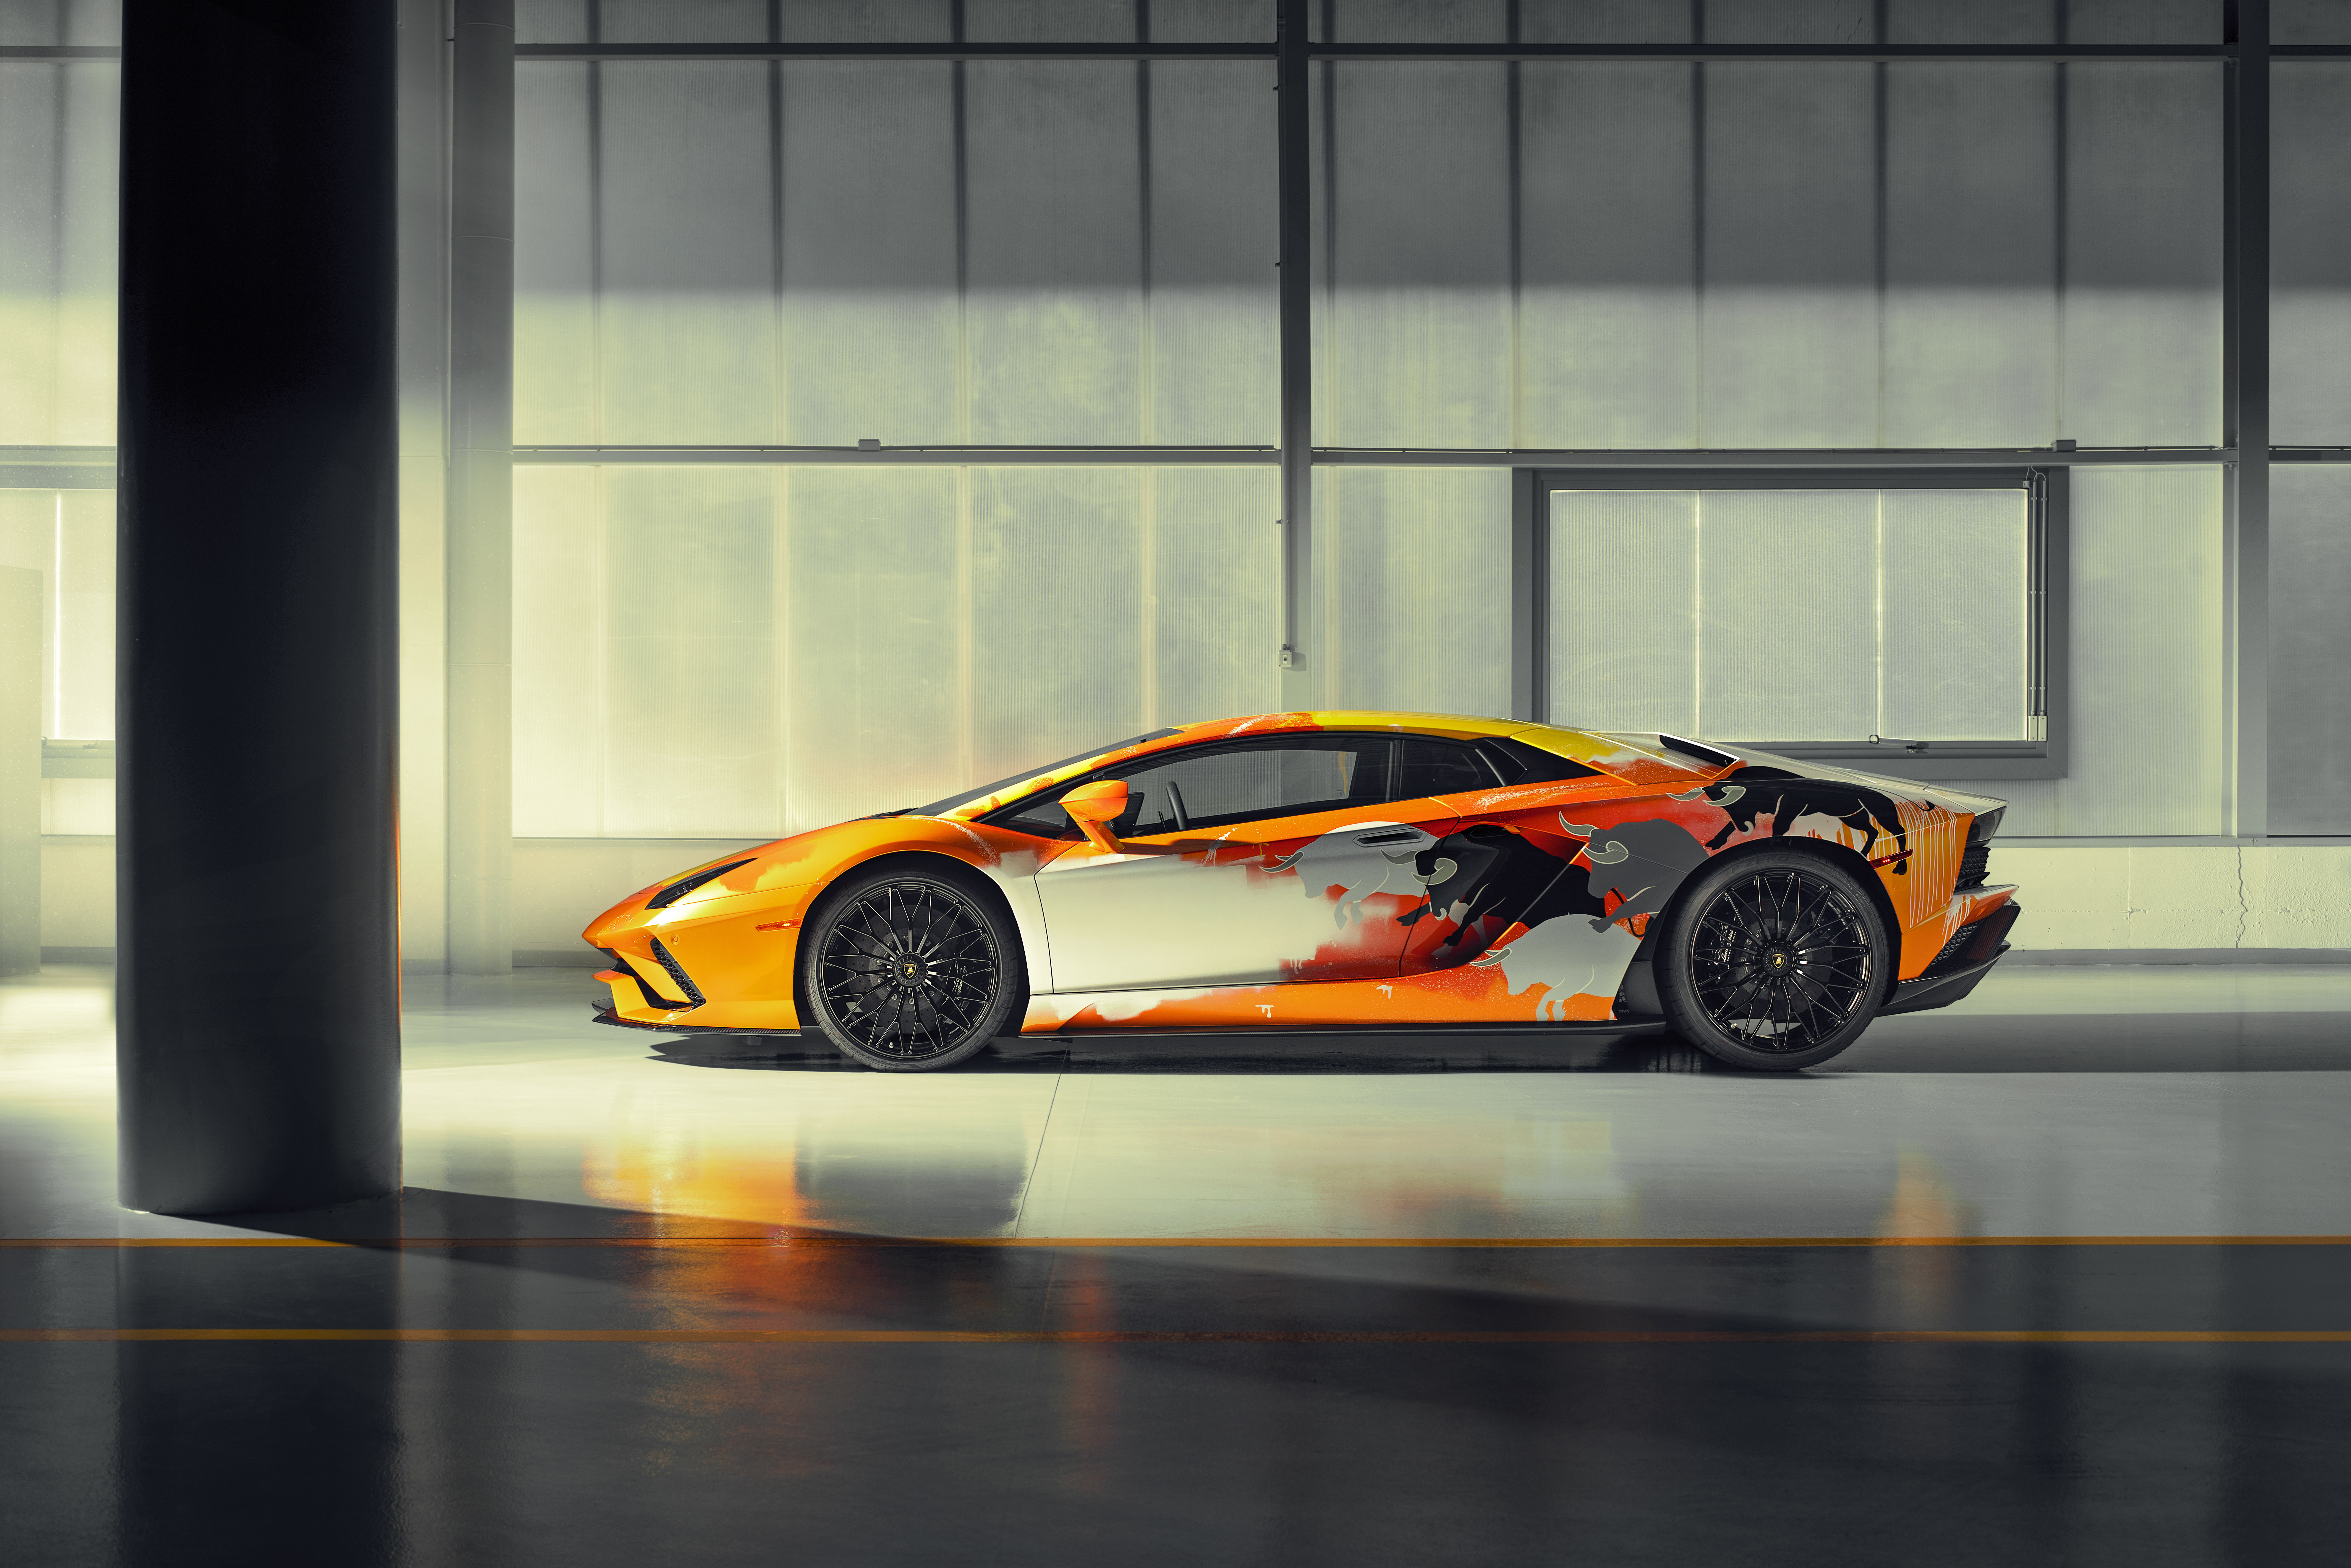 Lamborghini Aventador S - một siêu xe đích thực với vẻ ngoài đầy uy lực và sức mạnh. Bộ hình nền của chiếc xe này đưa bạn vào một thế giới đầy cảm hứng và tư duy sáng tạo.